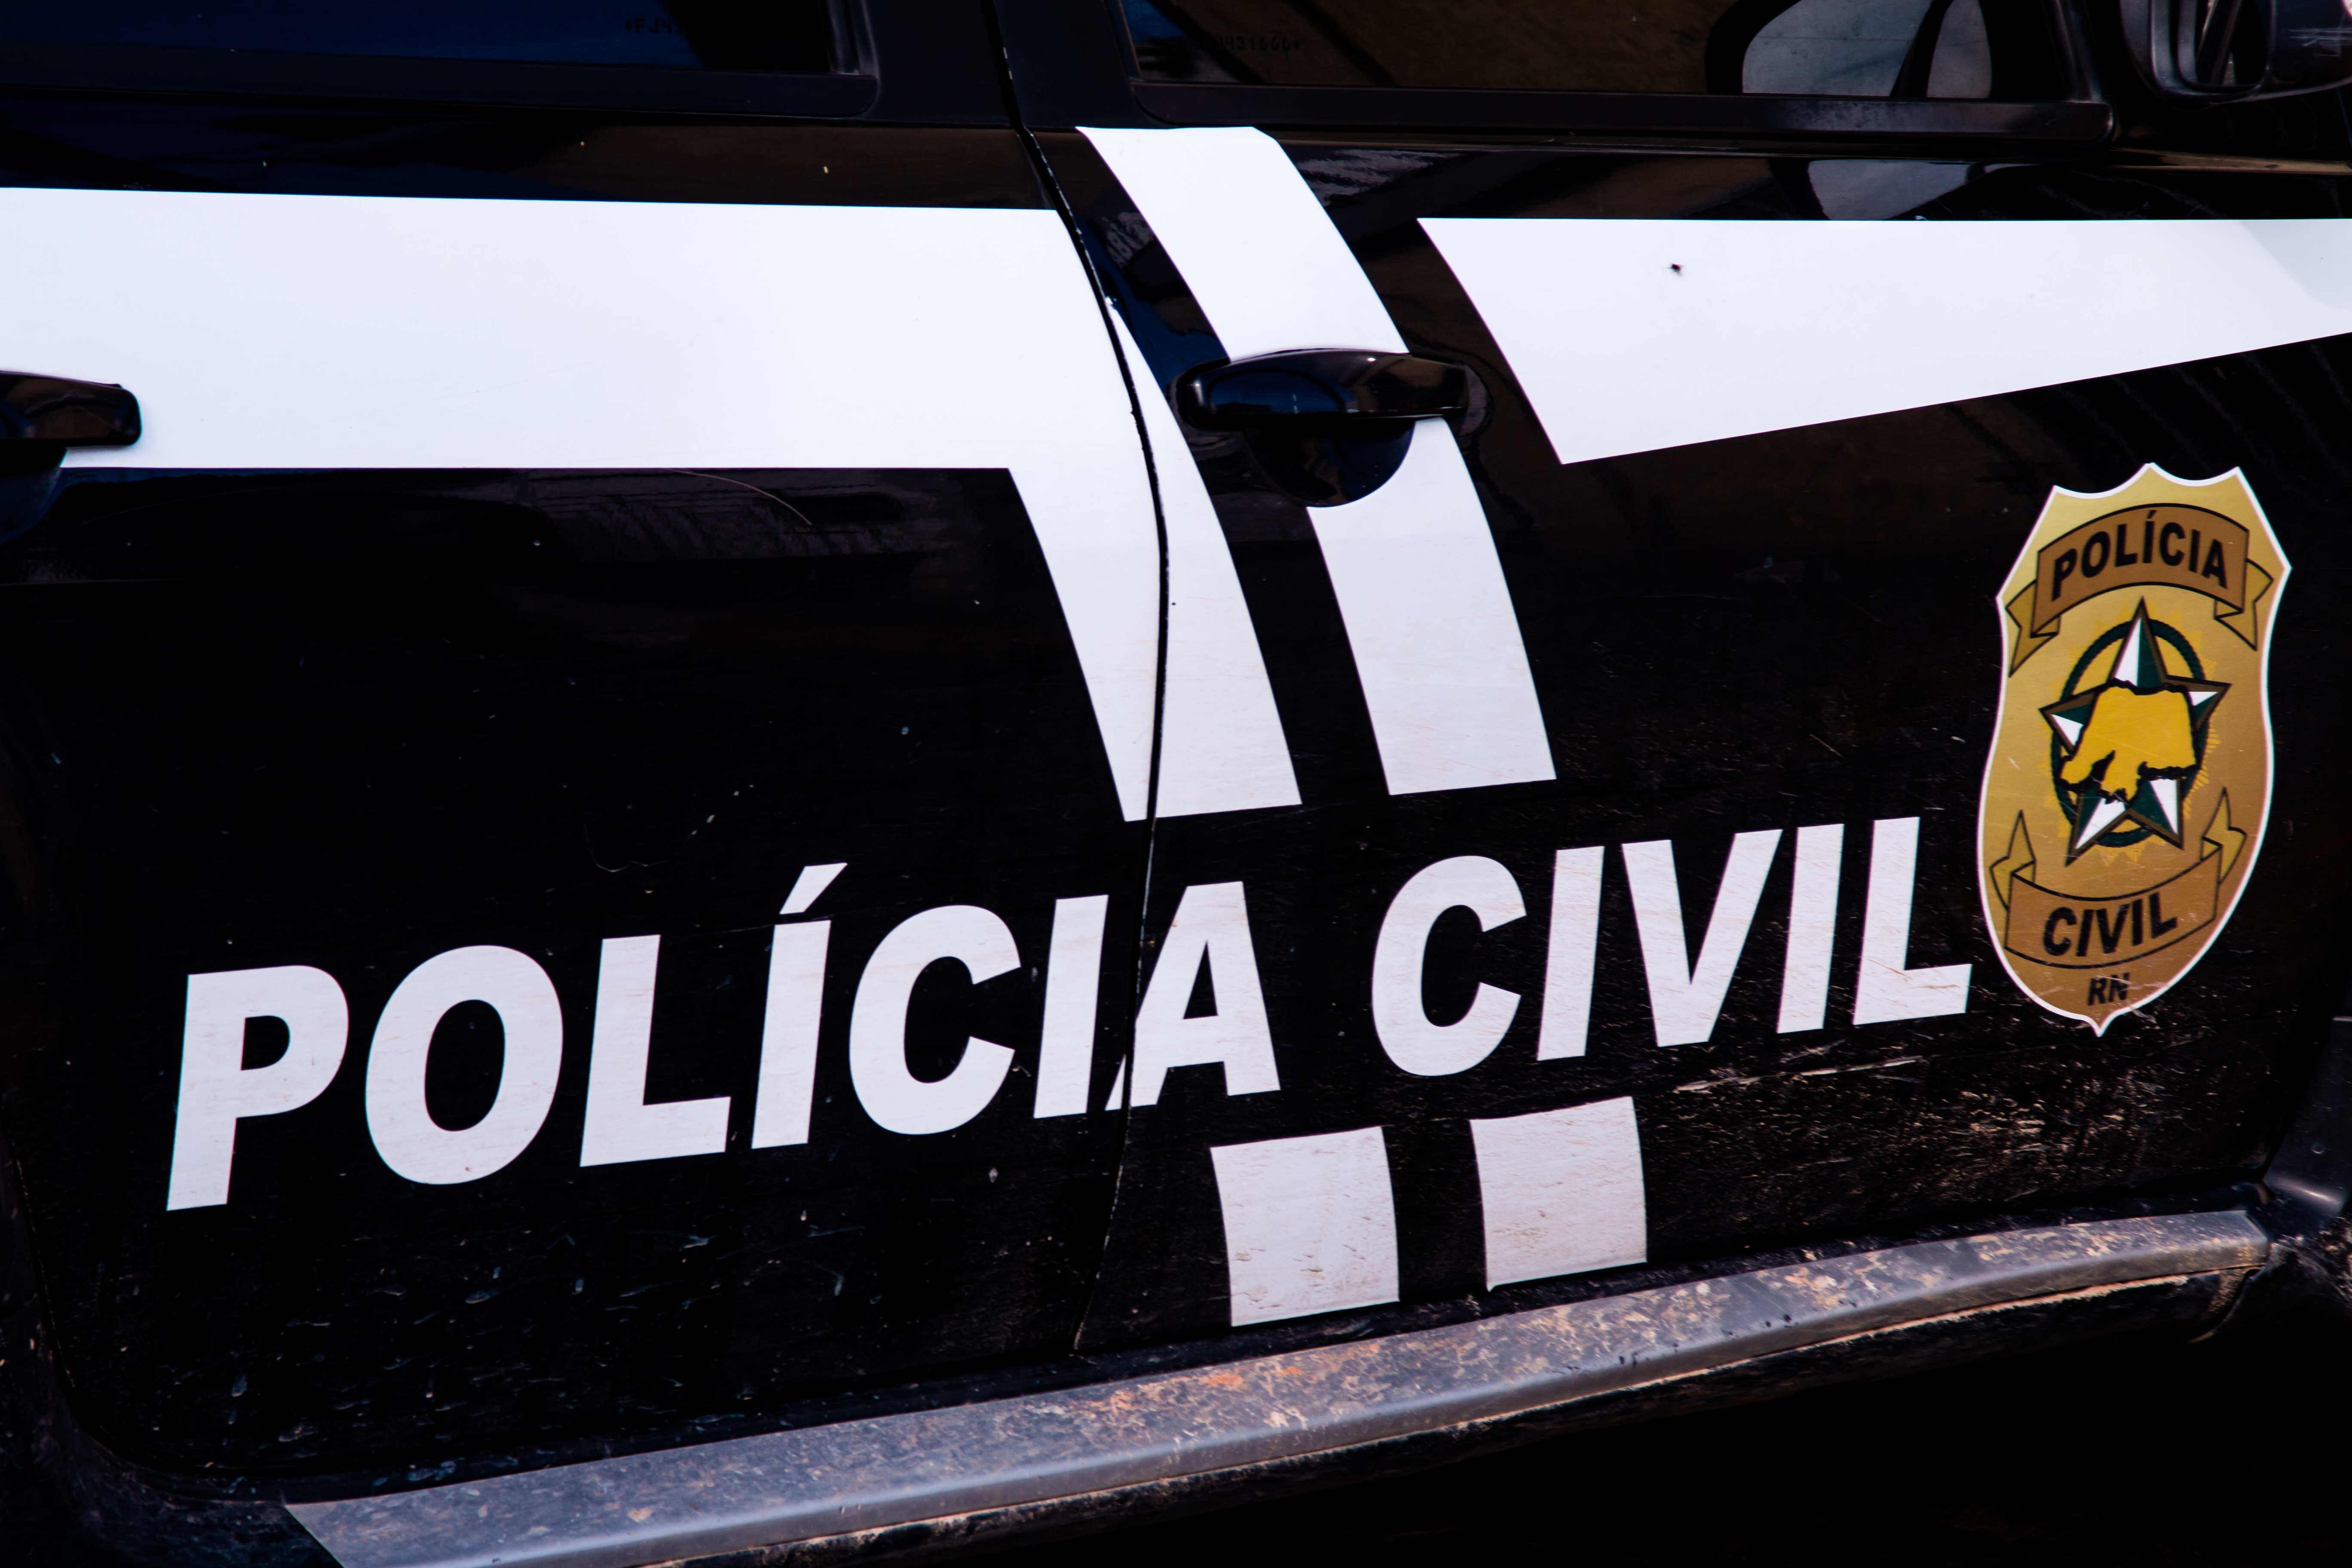 Viatura da Polícia Civil - Foto: Carlos Azevedo/NOVO Notícias